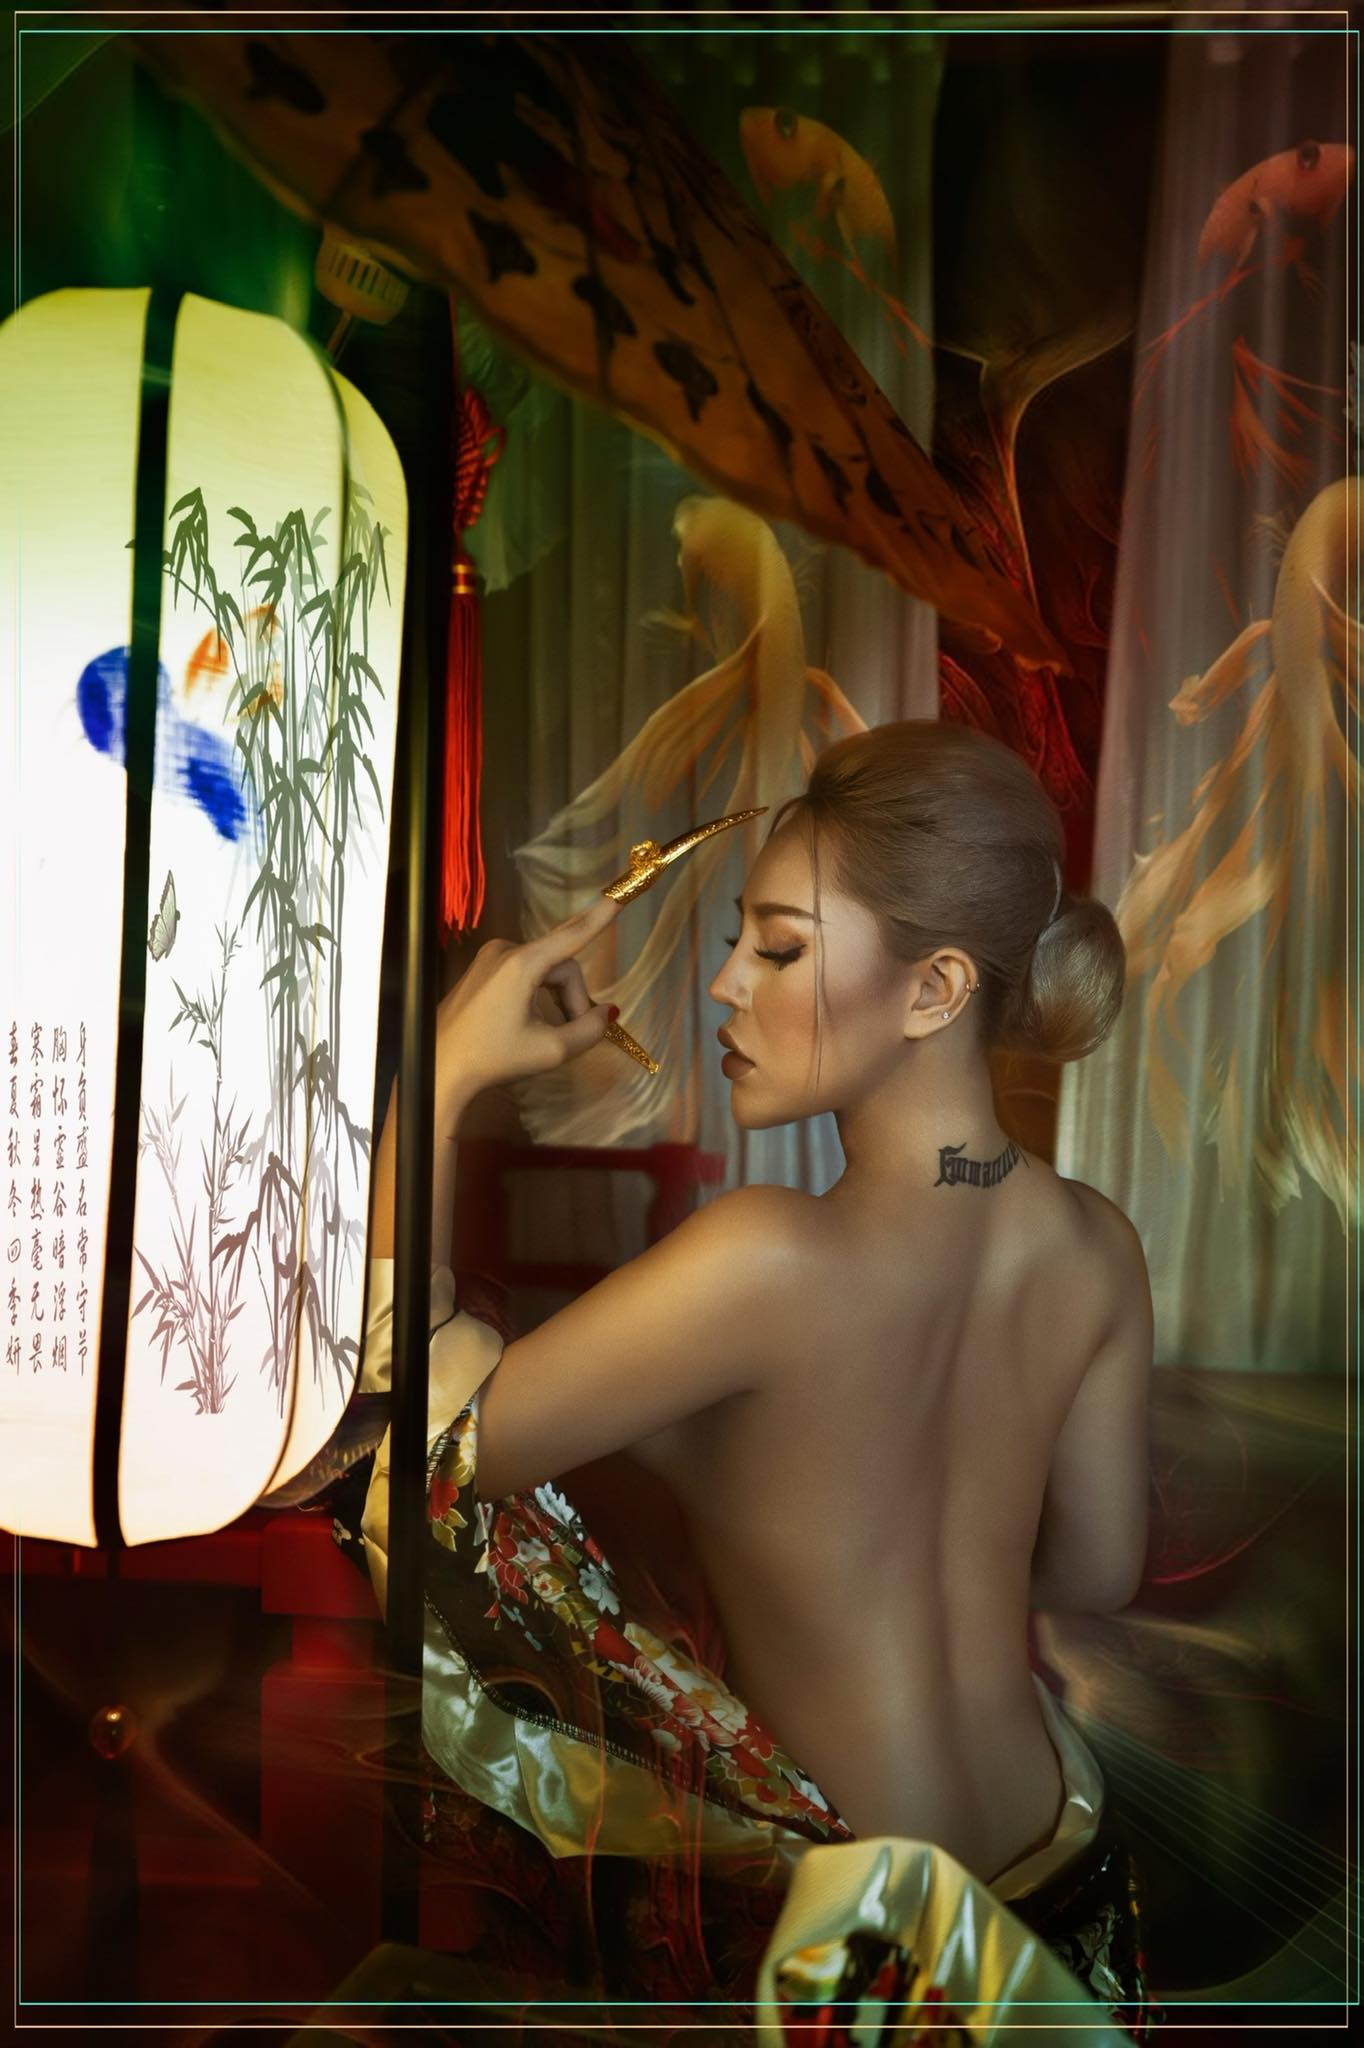 Mindy - Nàng mẫu theo đuổi phong cách sexy, mong muốn tôn vinh nét đẹp hình thể của người phụ nữ Việt